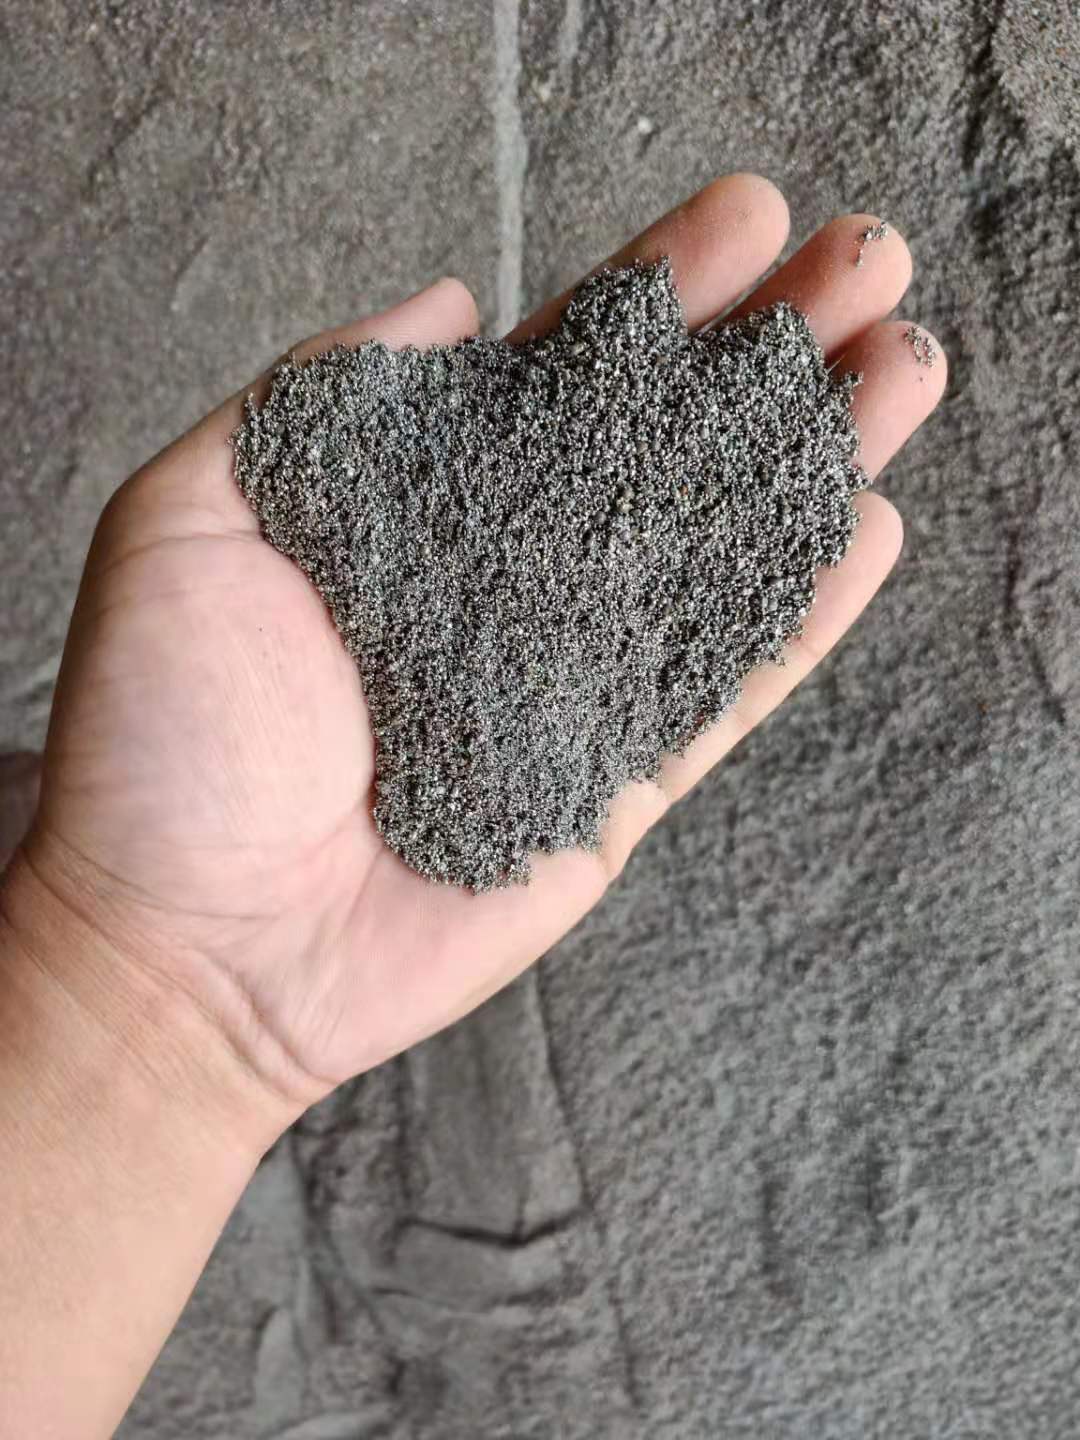 填充材料:铁砂 钢砂 配重铁砂 配重砂